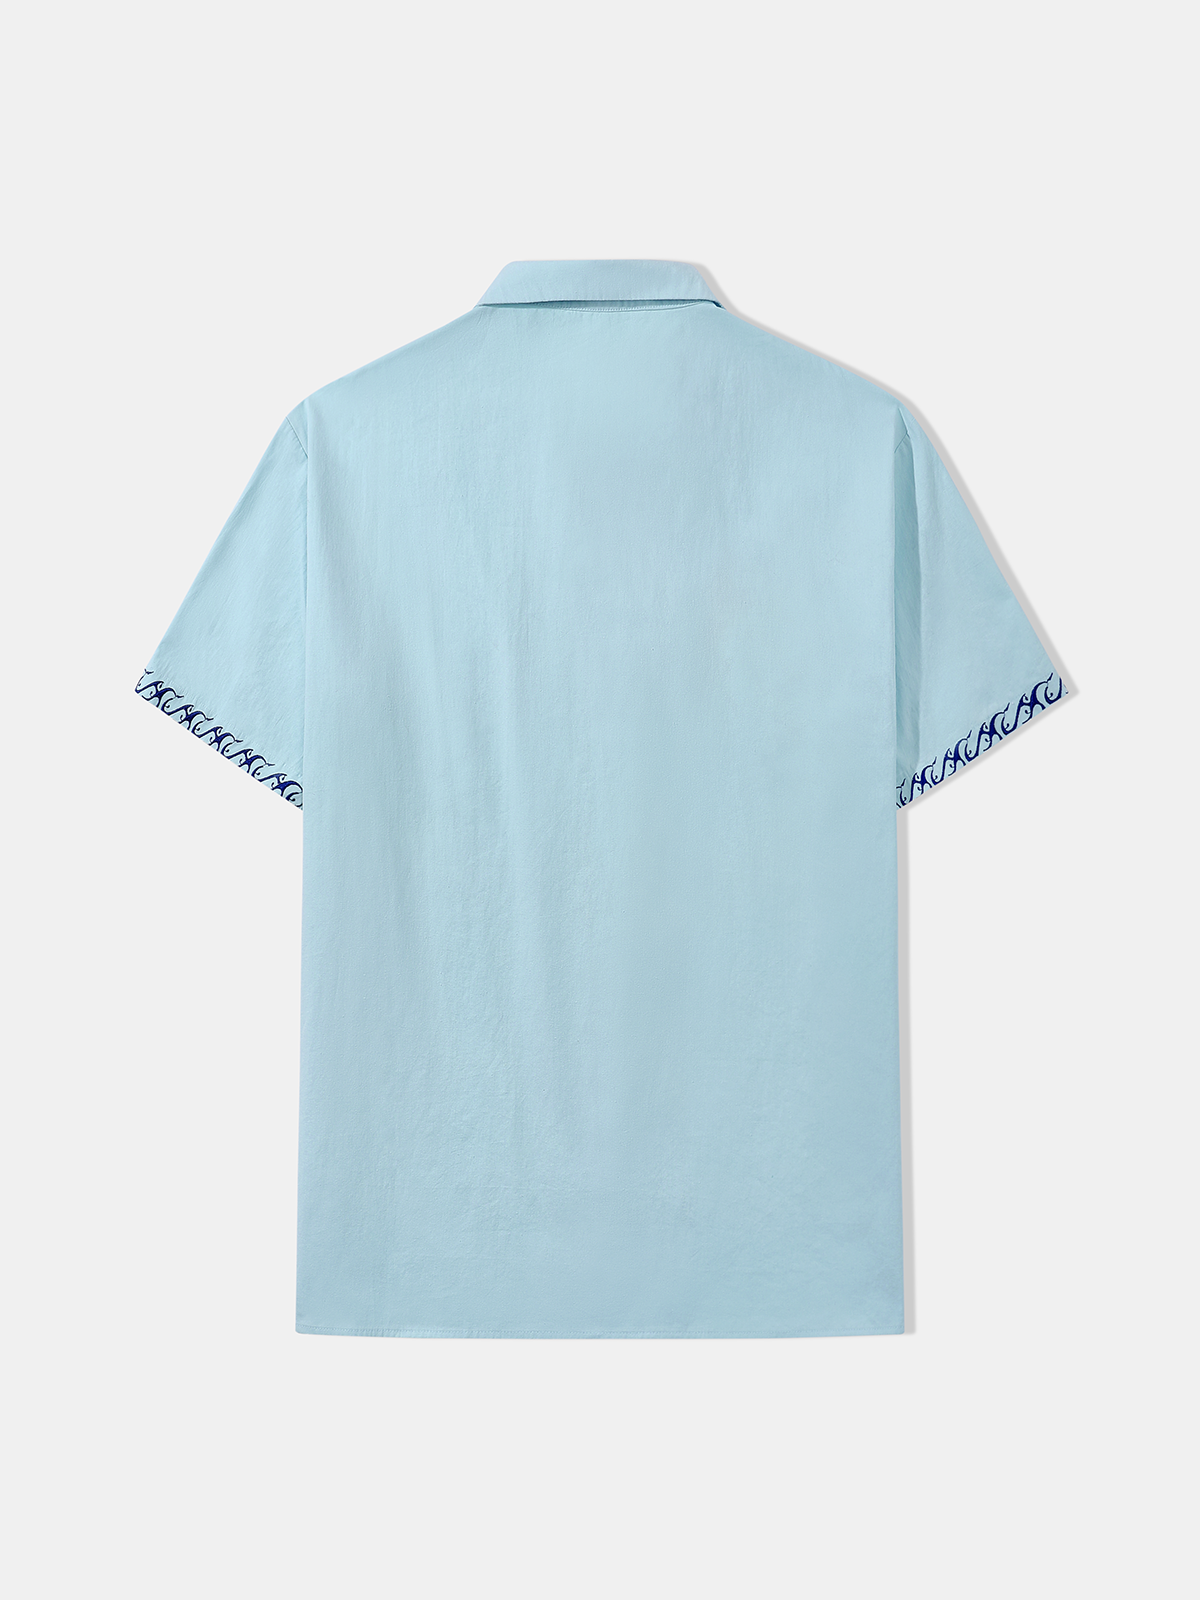 Hardaddy® Cotton Marlin Embroidered Aloha Shirt